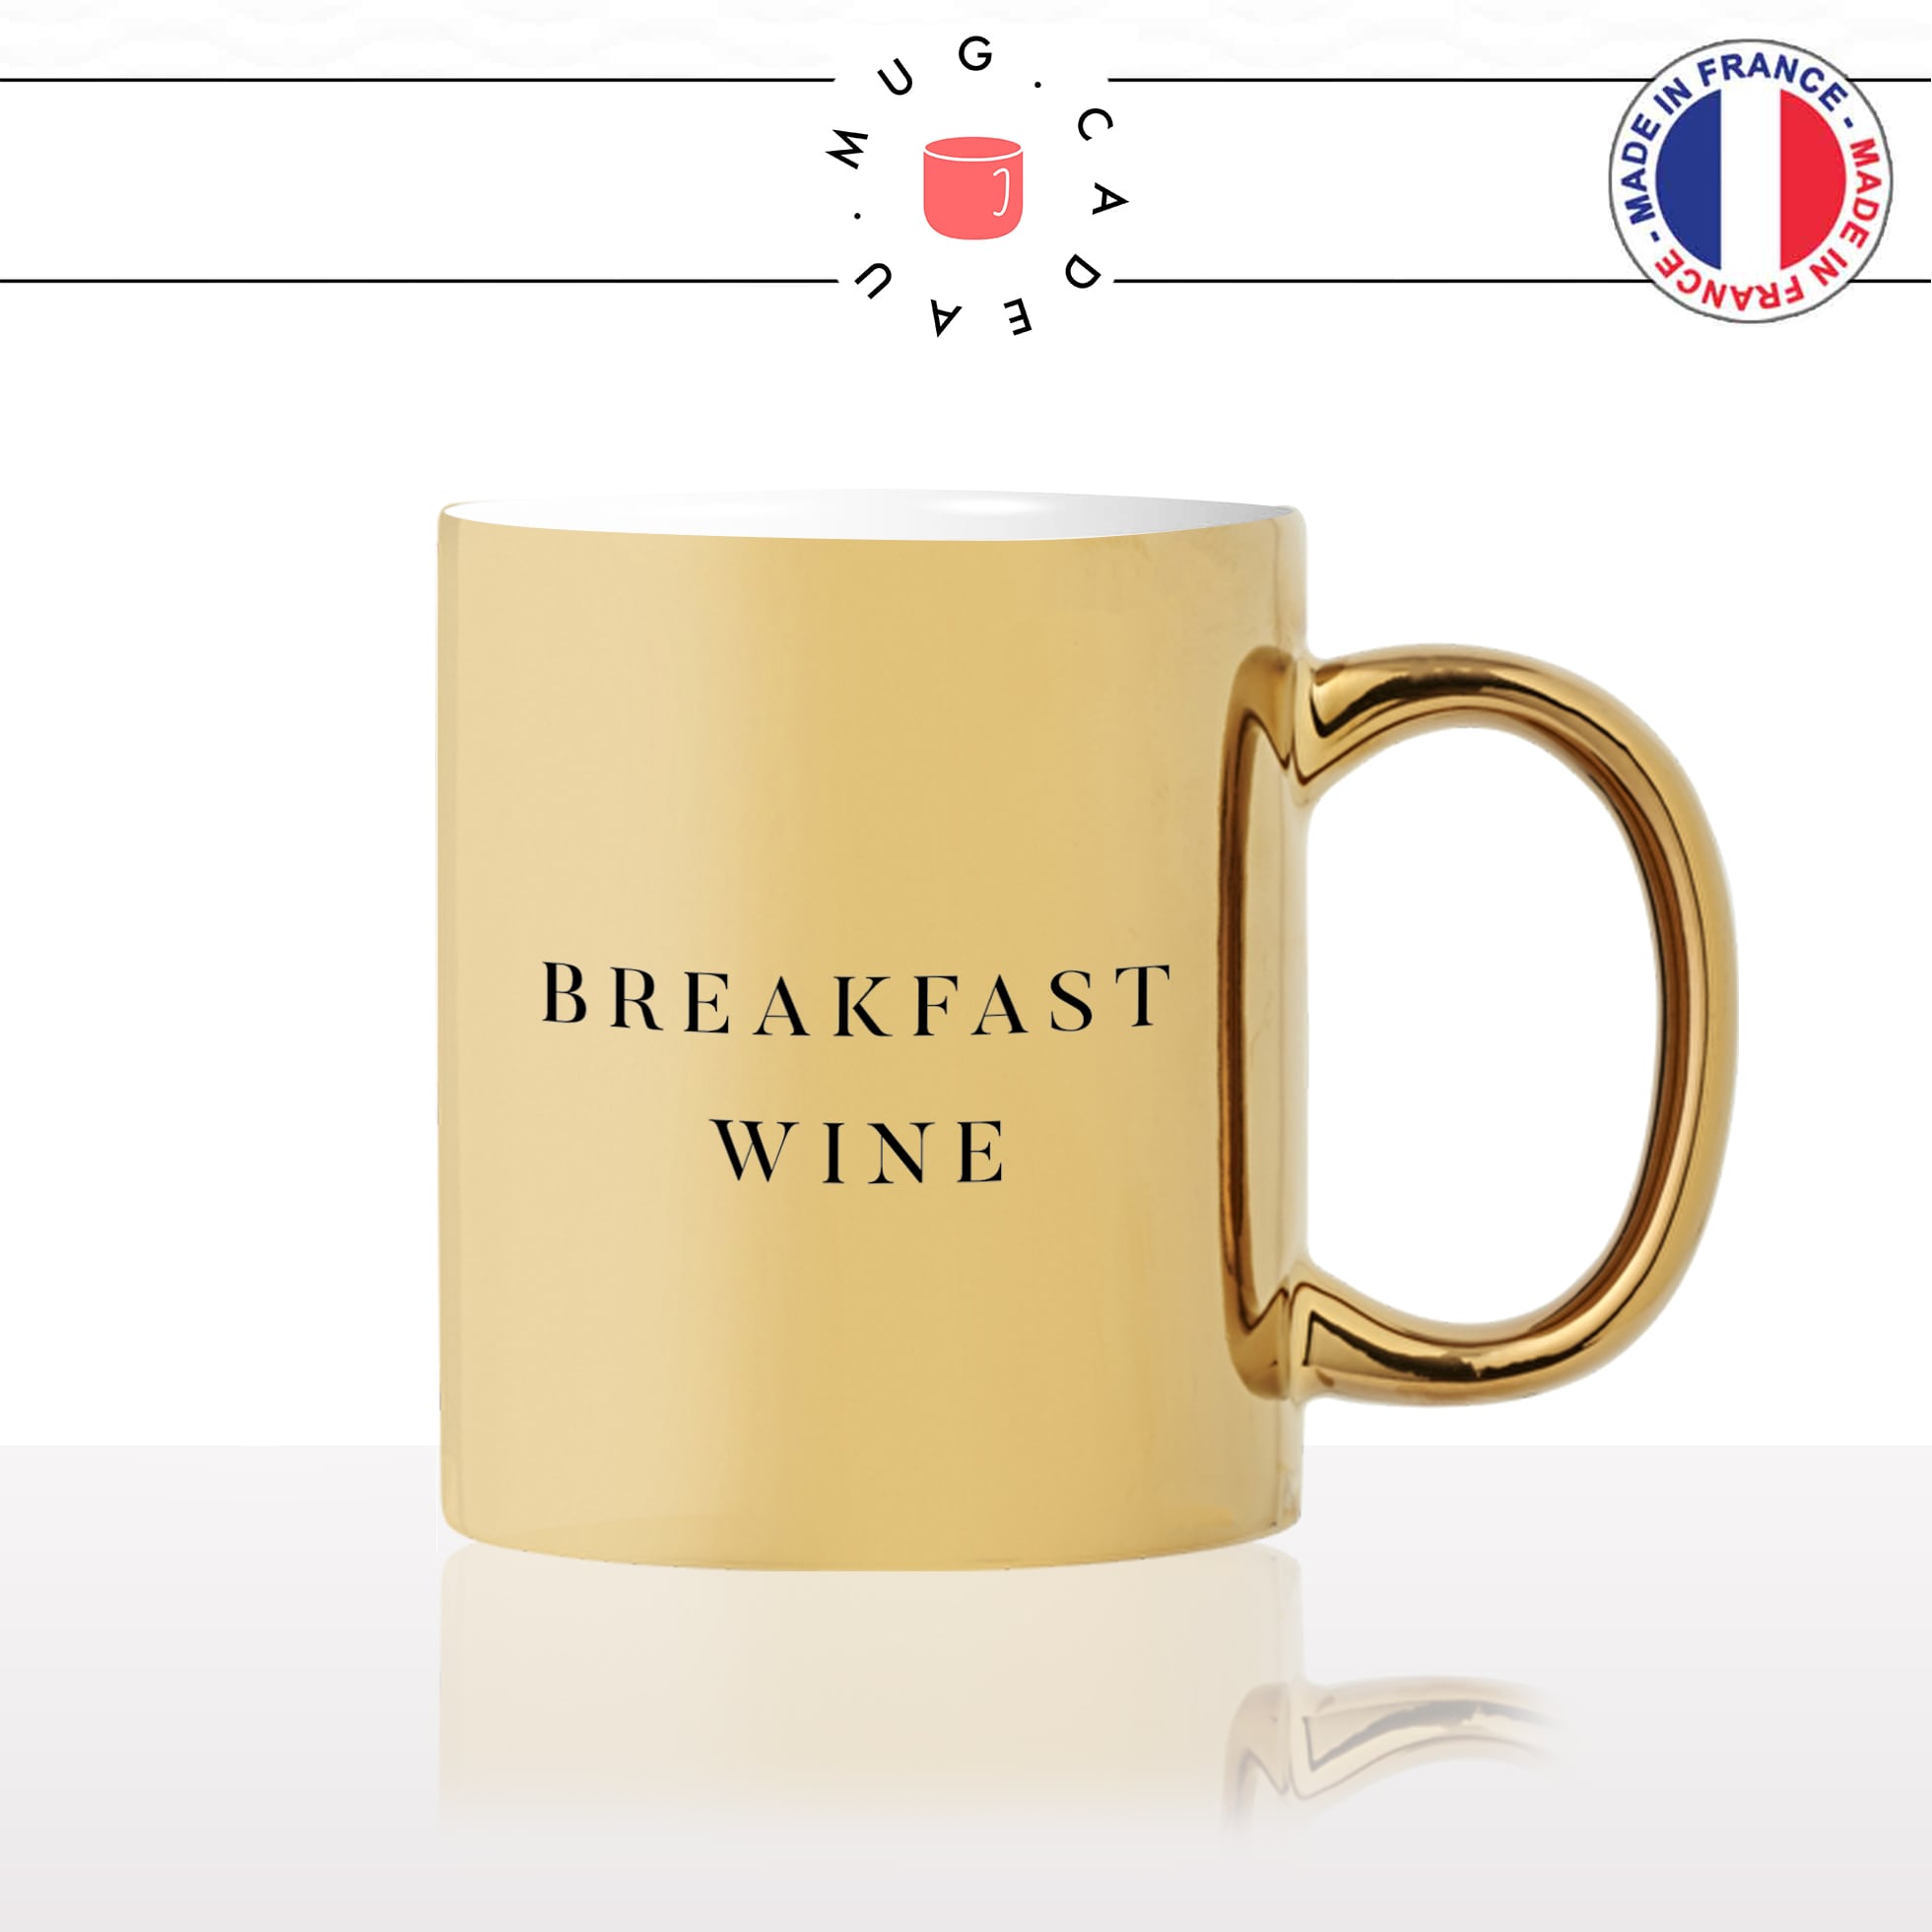 mug-tasse-doré-or-gold-breakfast-wine-vin-petit-déjeuné-croissant-collegues-travail-drole-cool-humour-fun-idée-cadeau-personnalisé-café-thé2-min